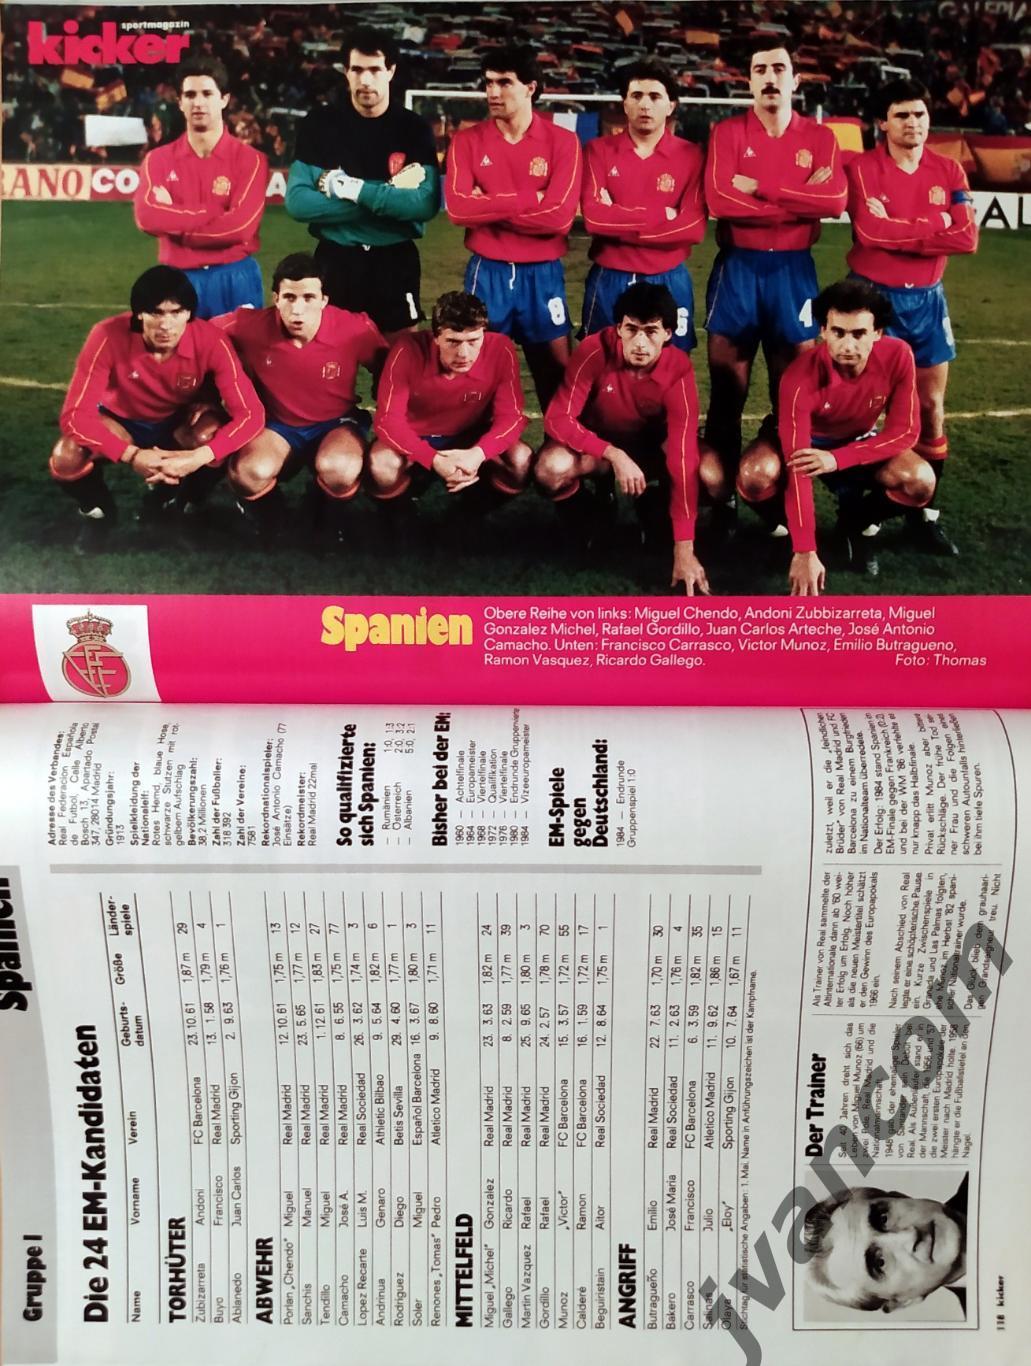 KICKER SONDERHEFT. Чемпионат Европы по футболу 1988 года. Превью участников. 7